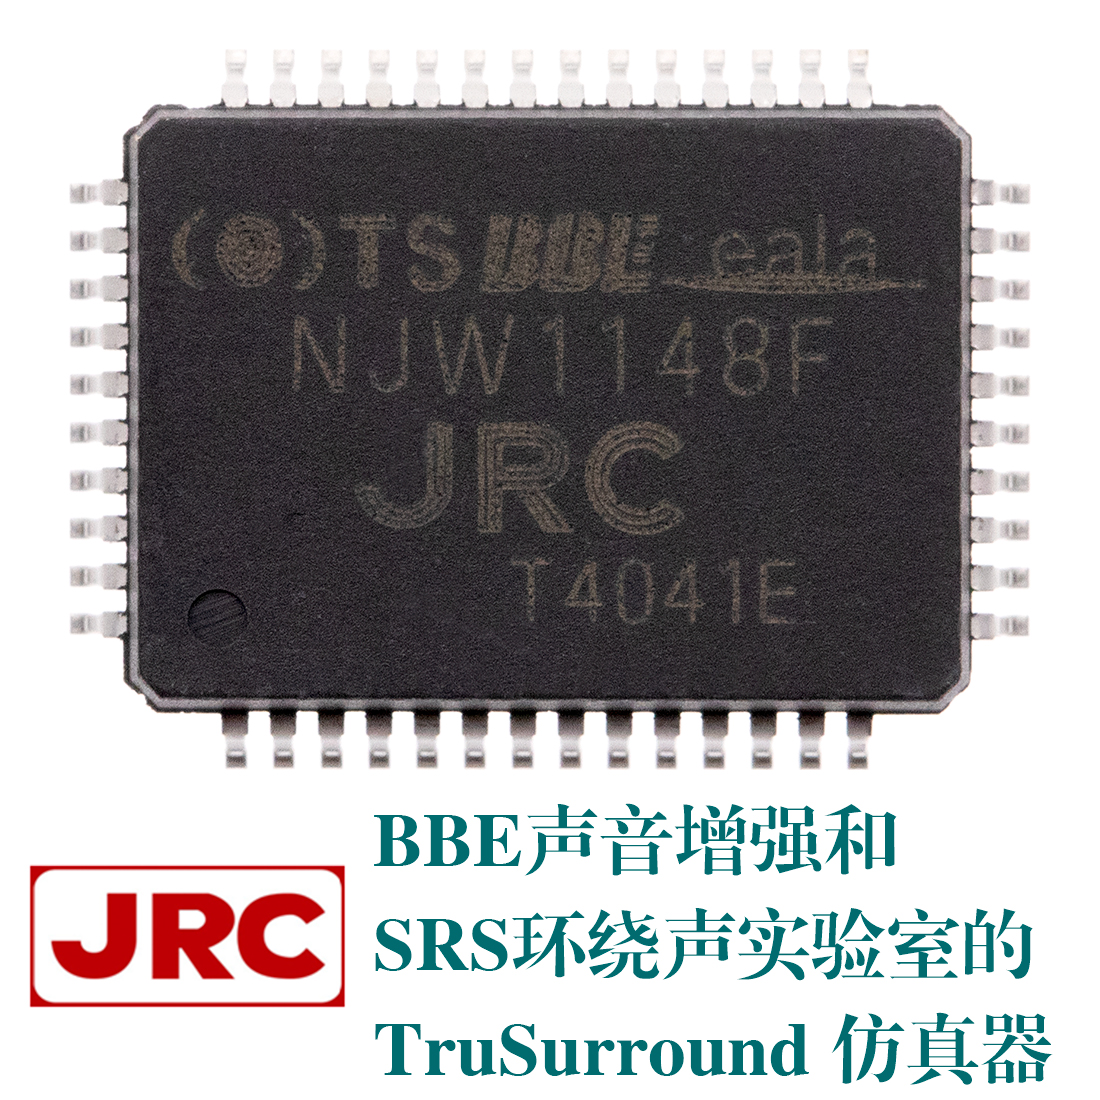 NJW1148F, NJRC新日本无线IC代理商，JRC音频处理器,BBE声音增强,SRS环绕声实验室, JRC TruSurround仿真器,BBE sound enhancement,SRS Labs